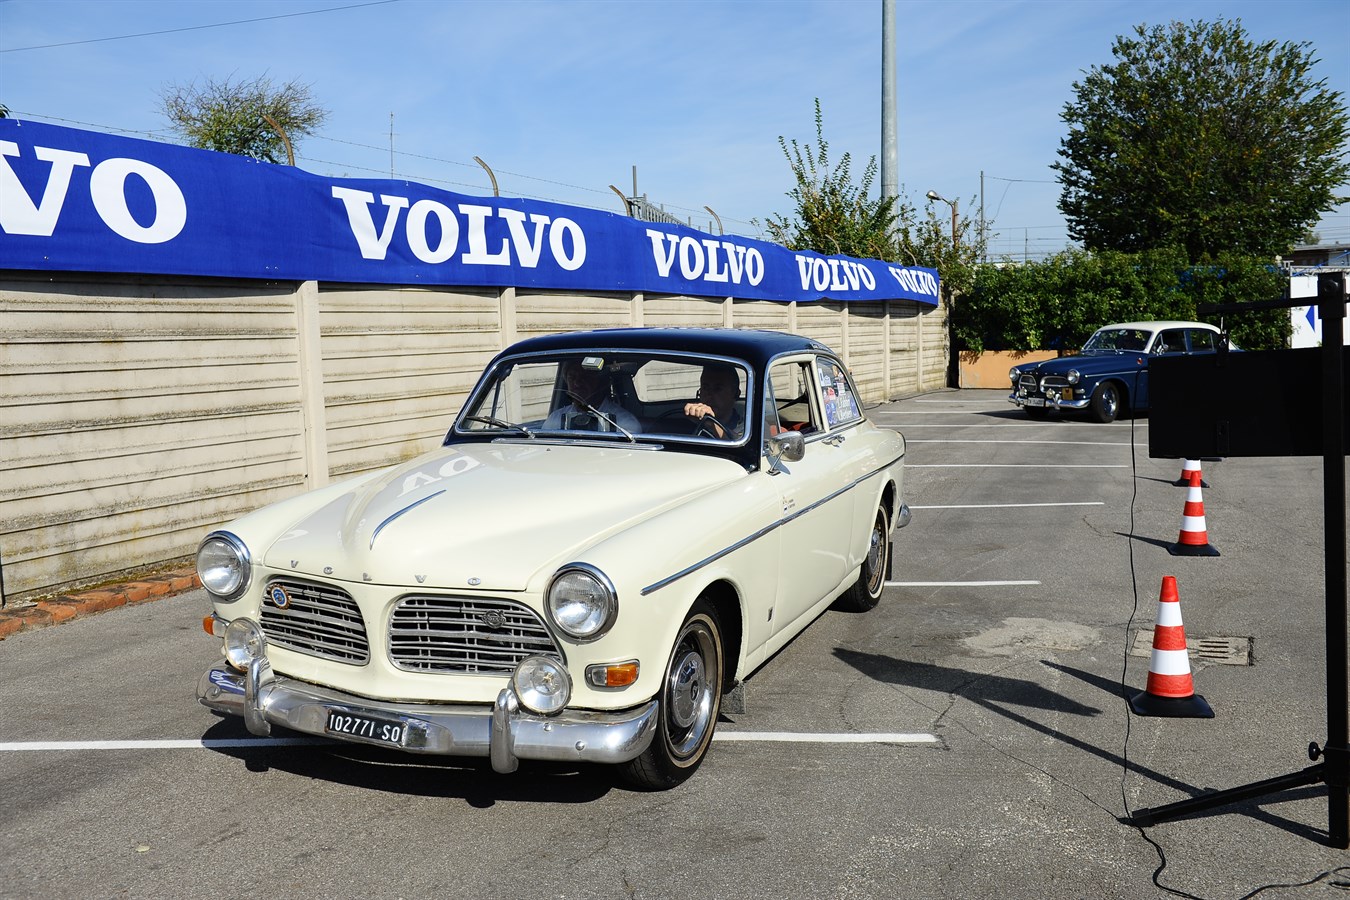 Registro Volvo d'Epoca - Raduno Annuale 2016 